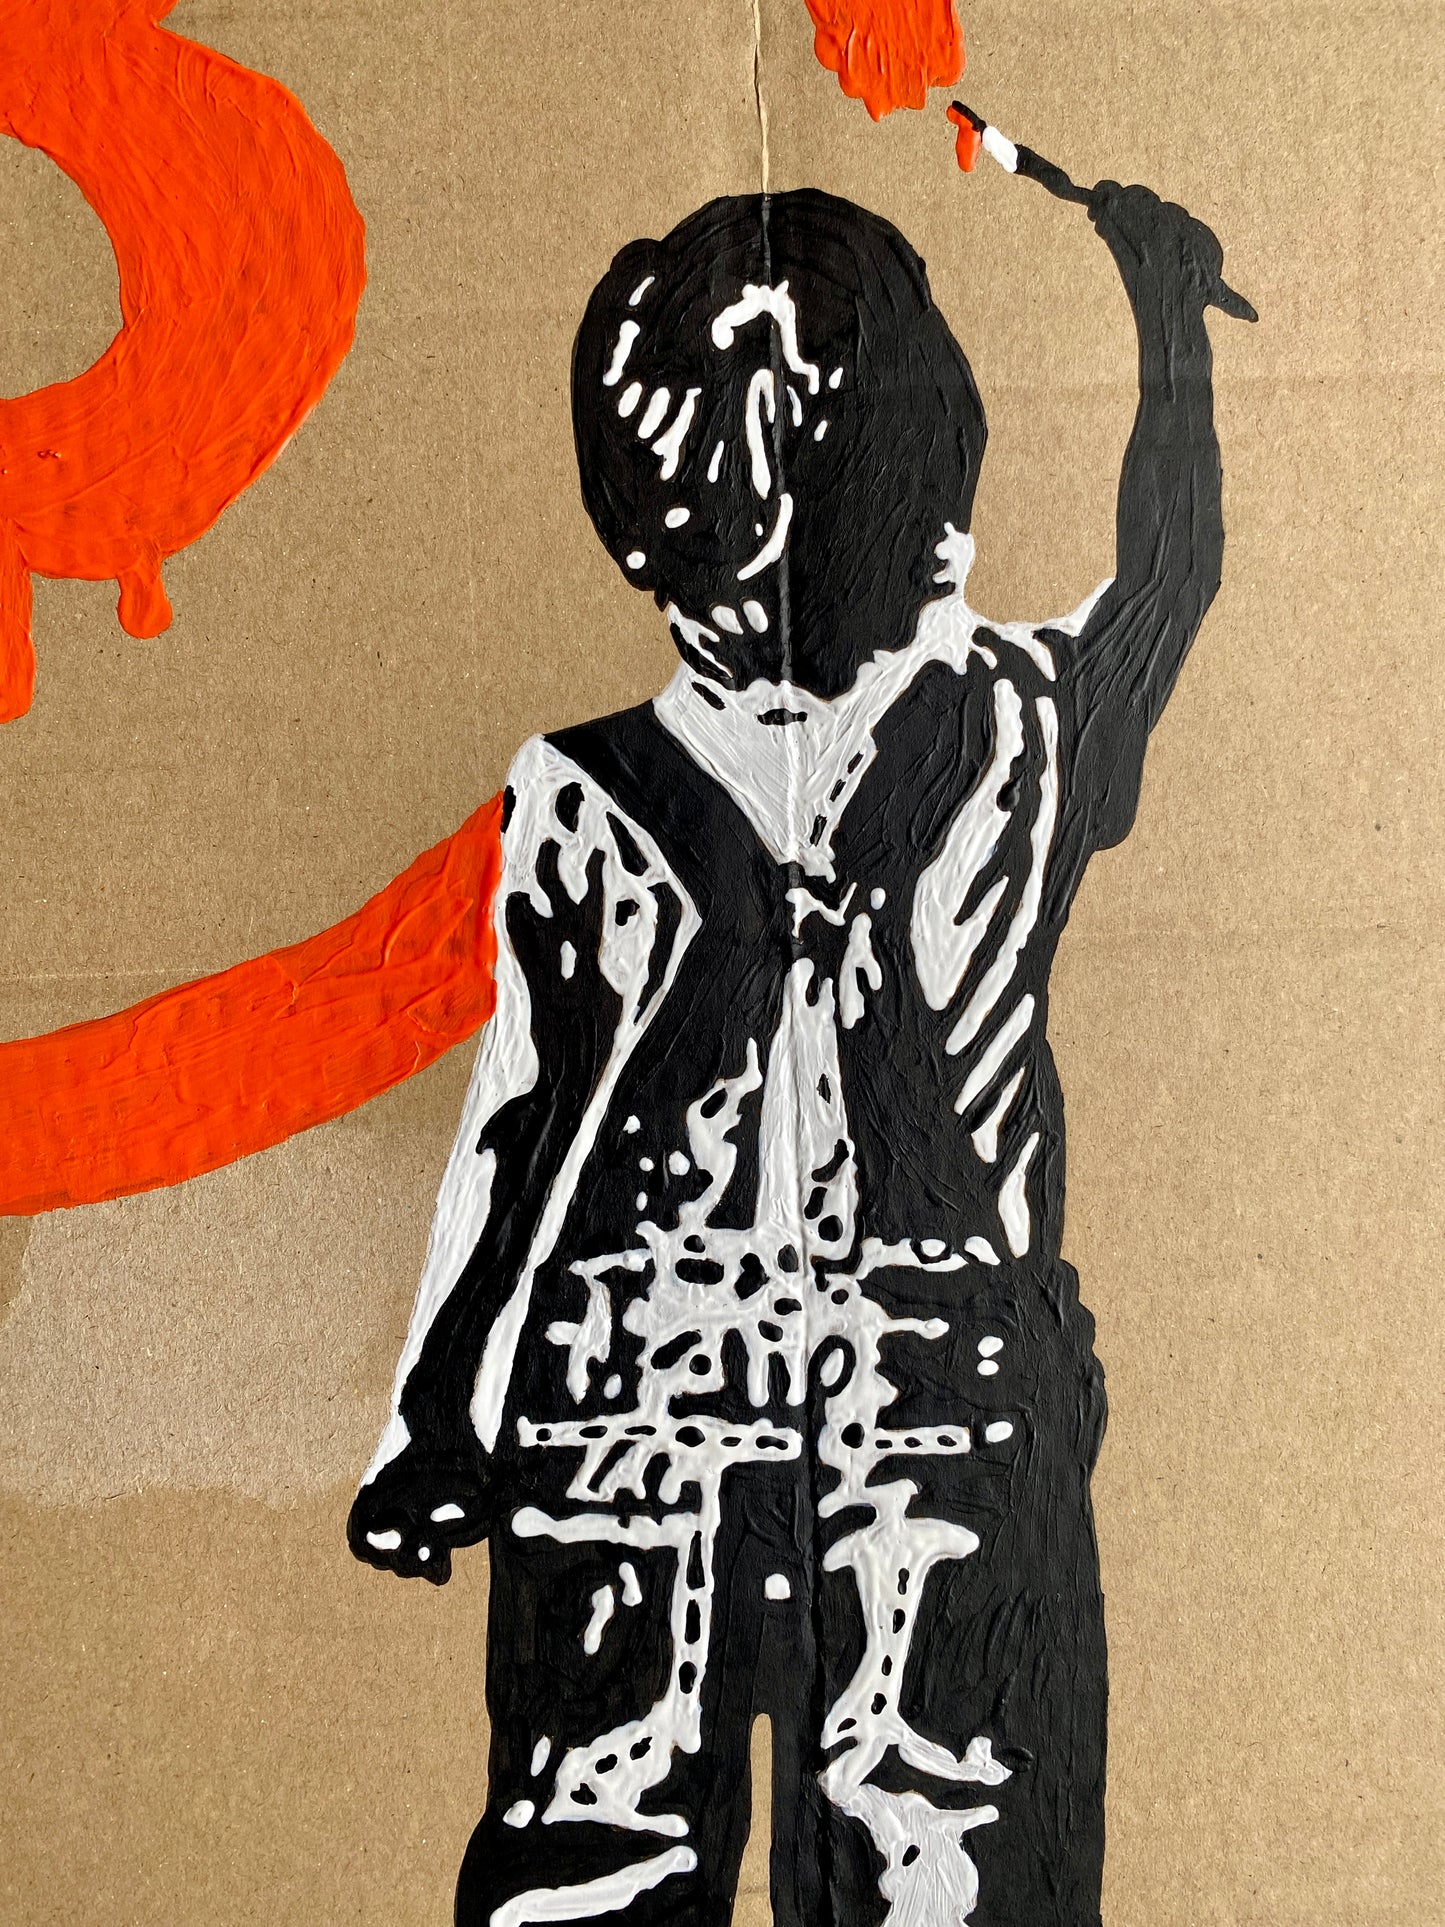 Acrylic Paint on Cardboard "Bitcoin Boy"